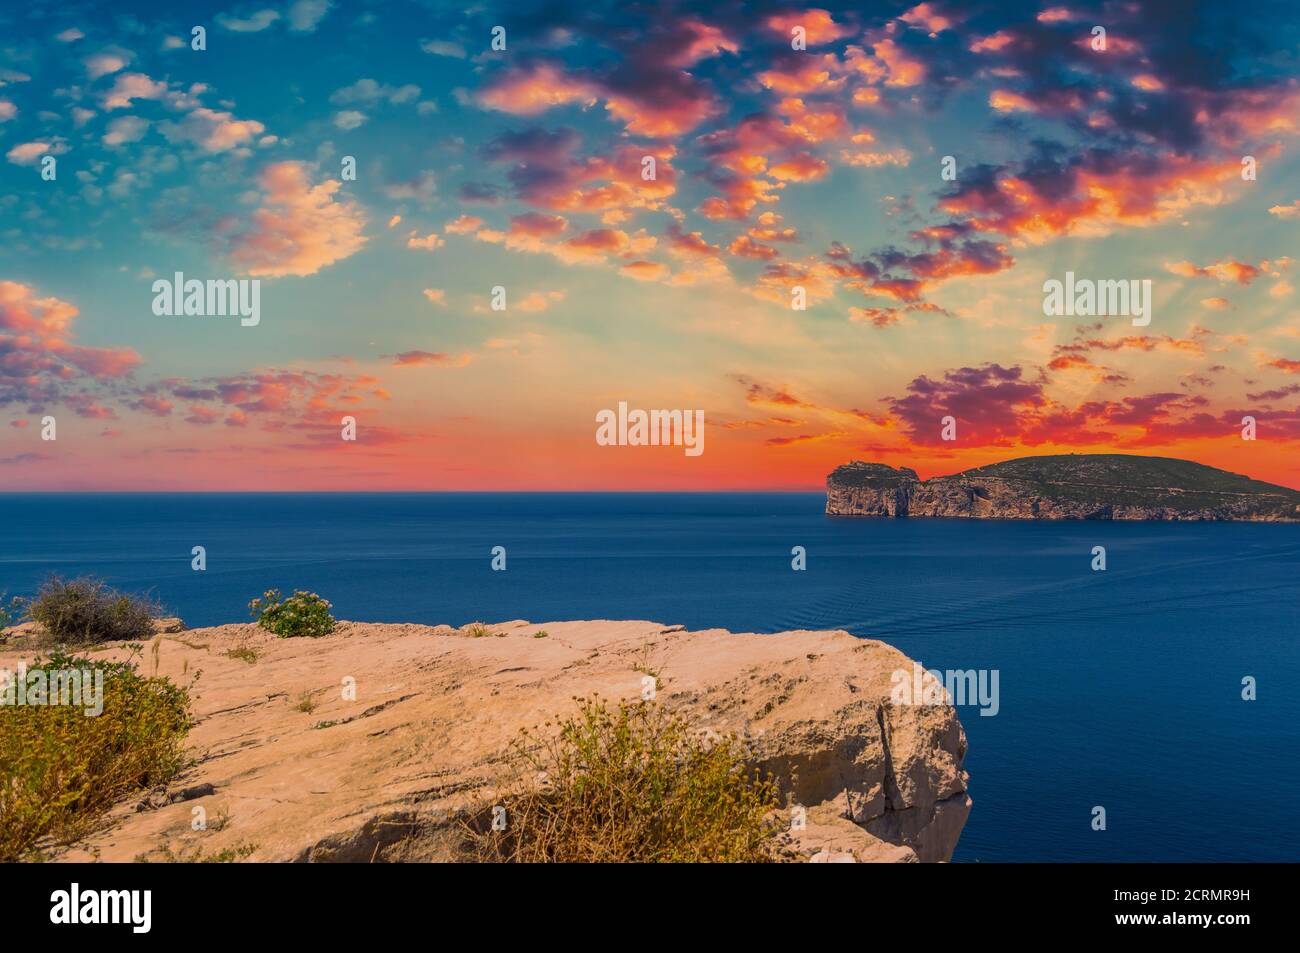 Paesaggio della costa di Capo Caccia, in Sardegna, al suggestivo tramonto con nuvole rosse Foto Stock